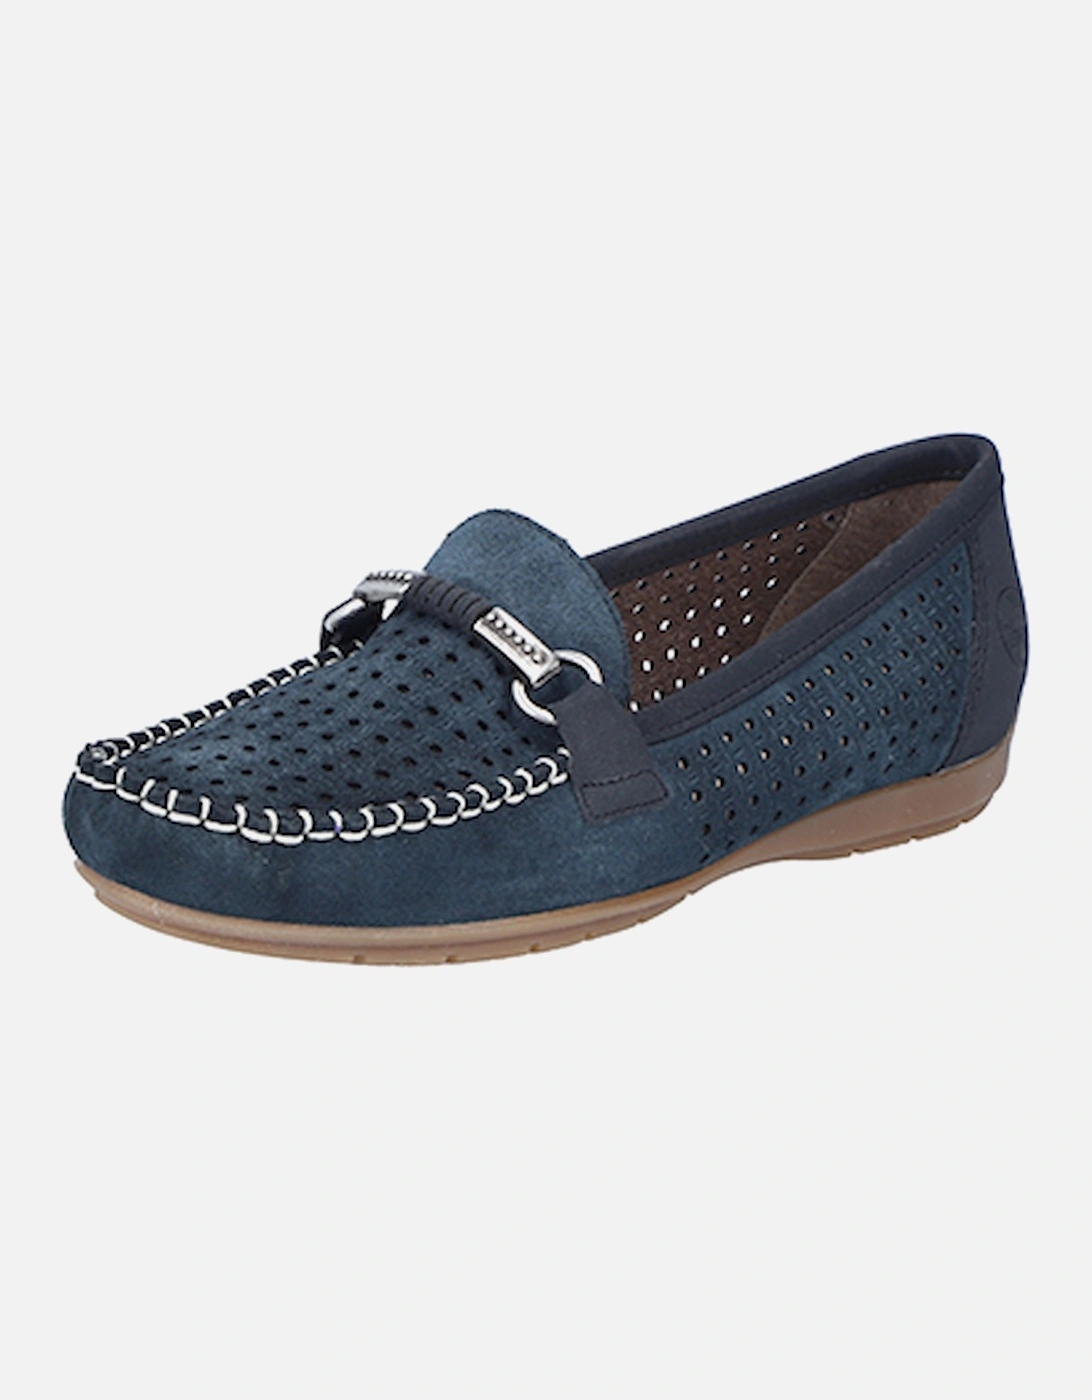 40253-14 Women's Shoe Blue, 8 of 7